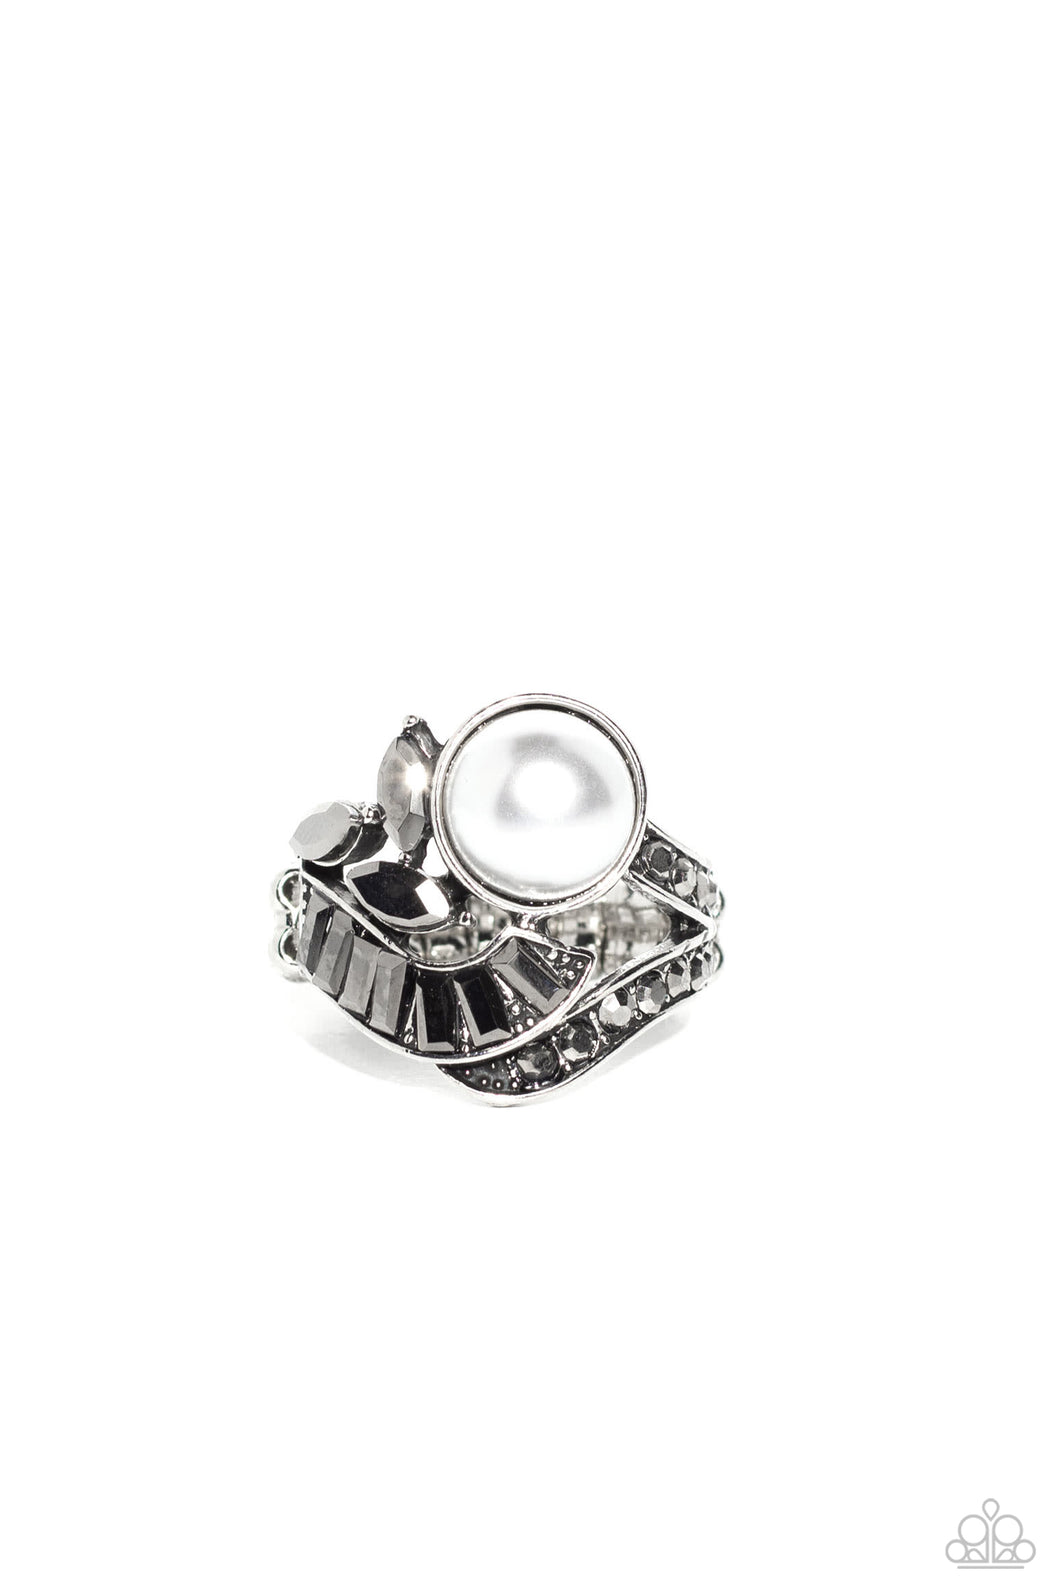 SELFIE-Made Millionaire - Silver (Hematite Rhinestone/White Pearl) Ring